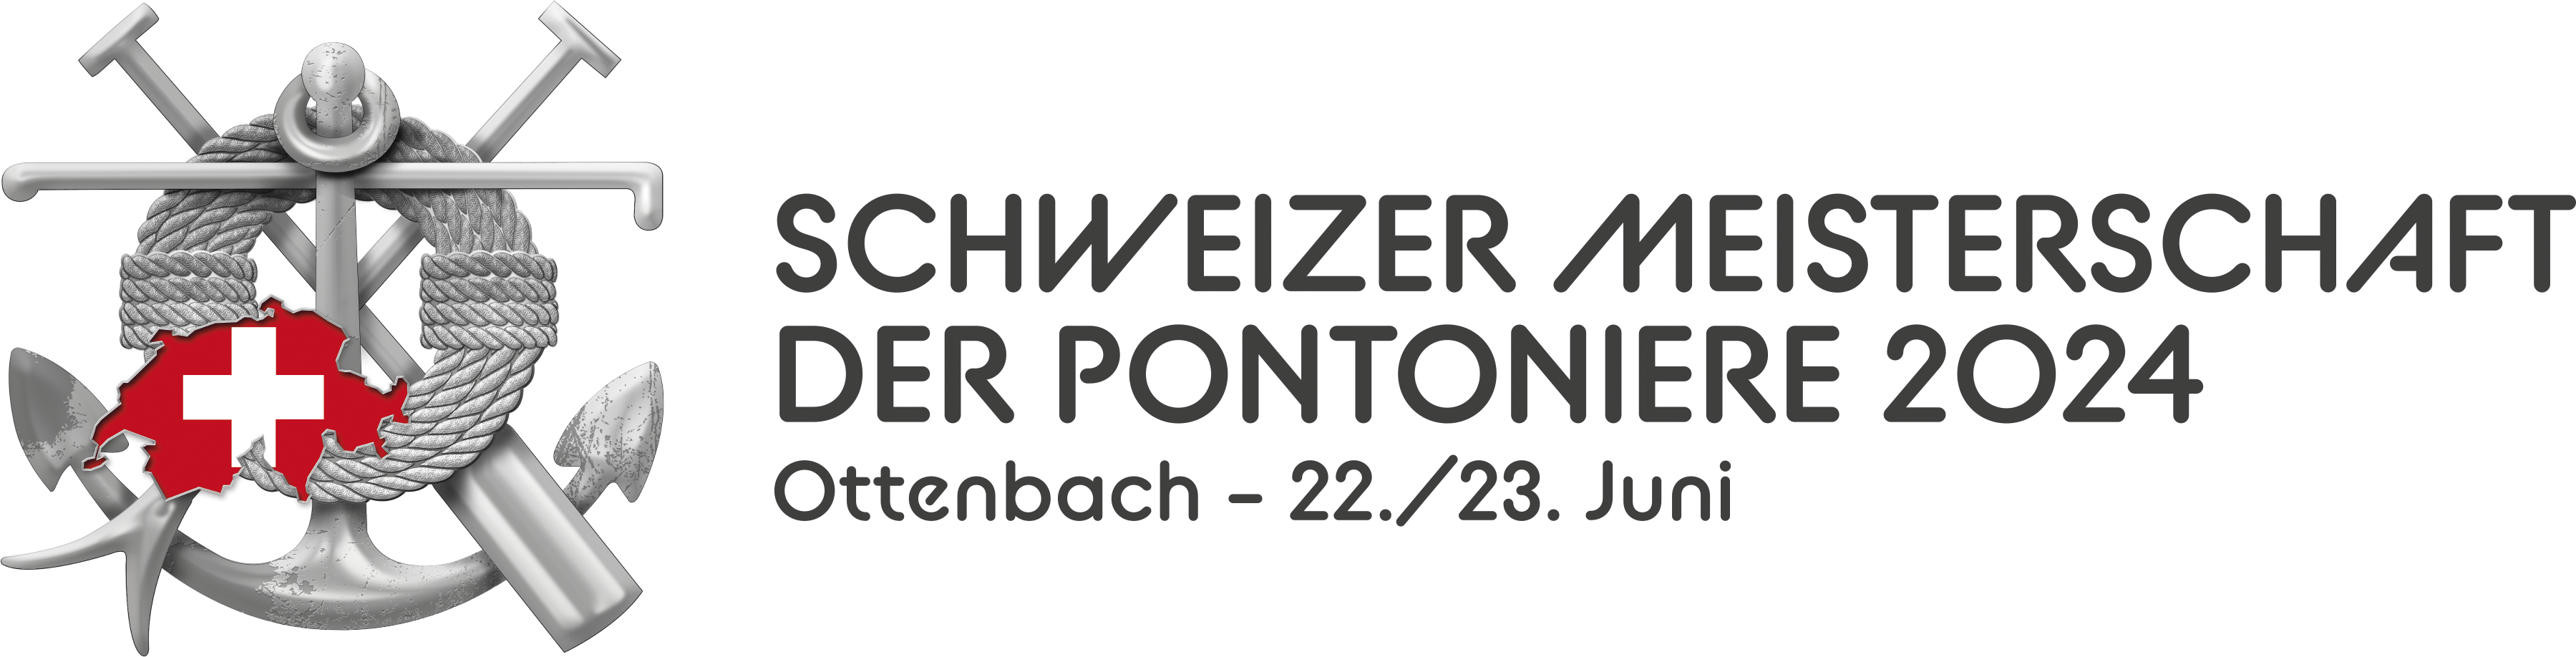 Schweizermeisterschaft der Pontoniere 2024